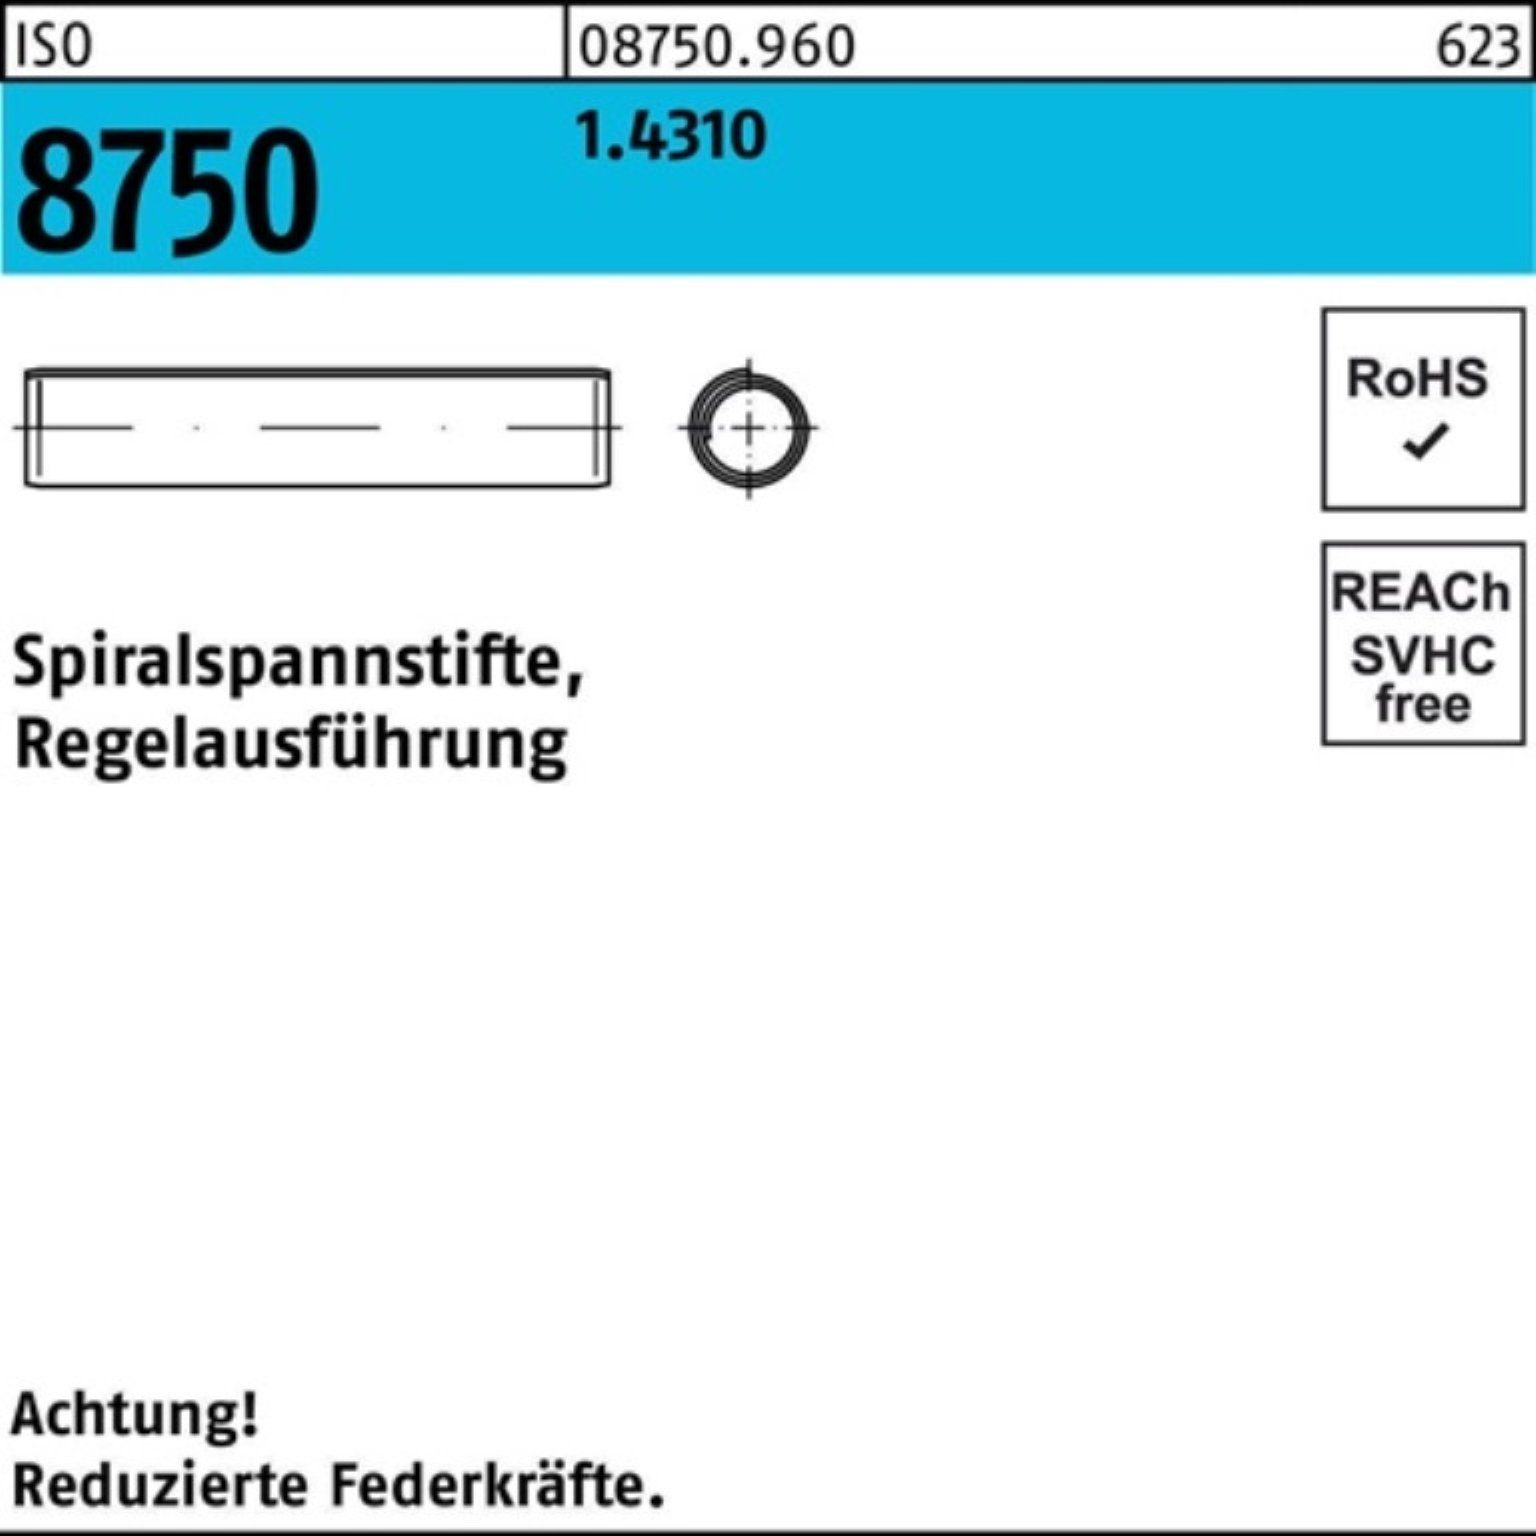 Pack 8750 Stüc Reyher 500er ISO Regelausf. Spannstift 500 26 1.4310 Spiralspannstift 4x